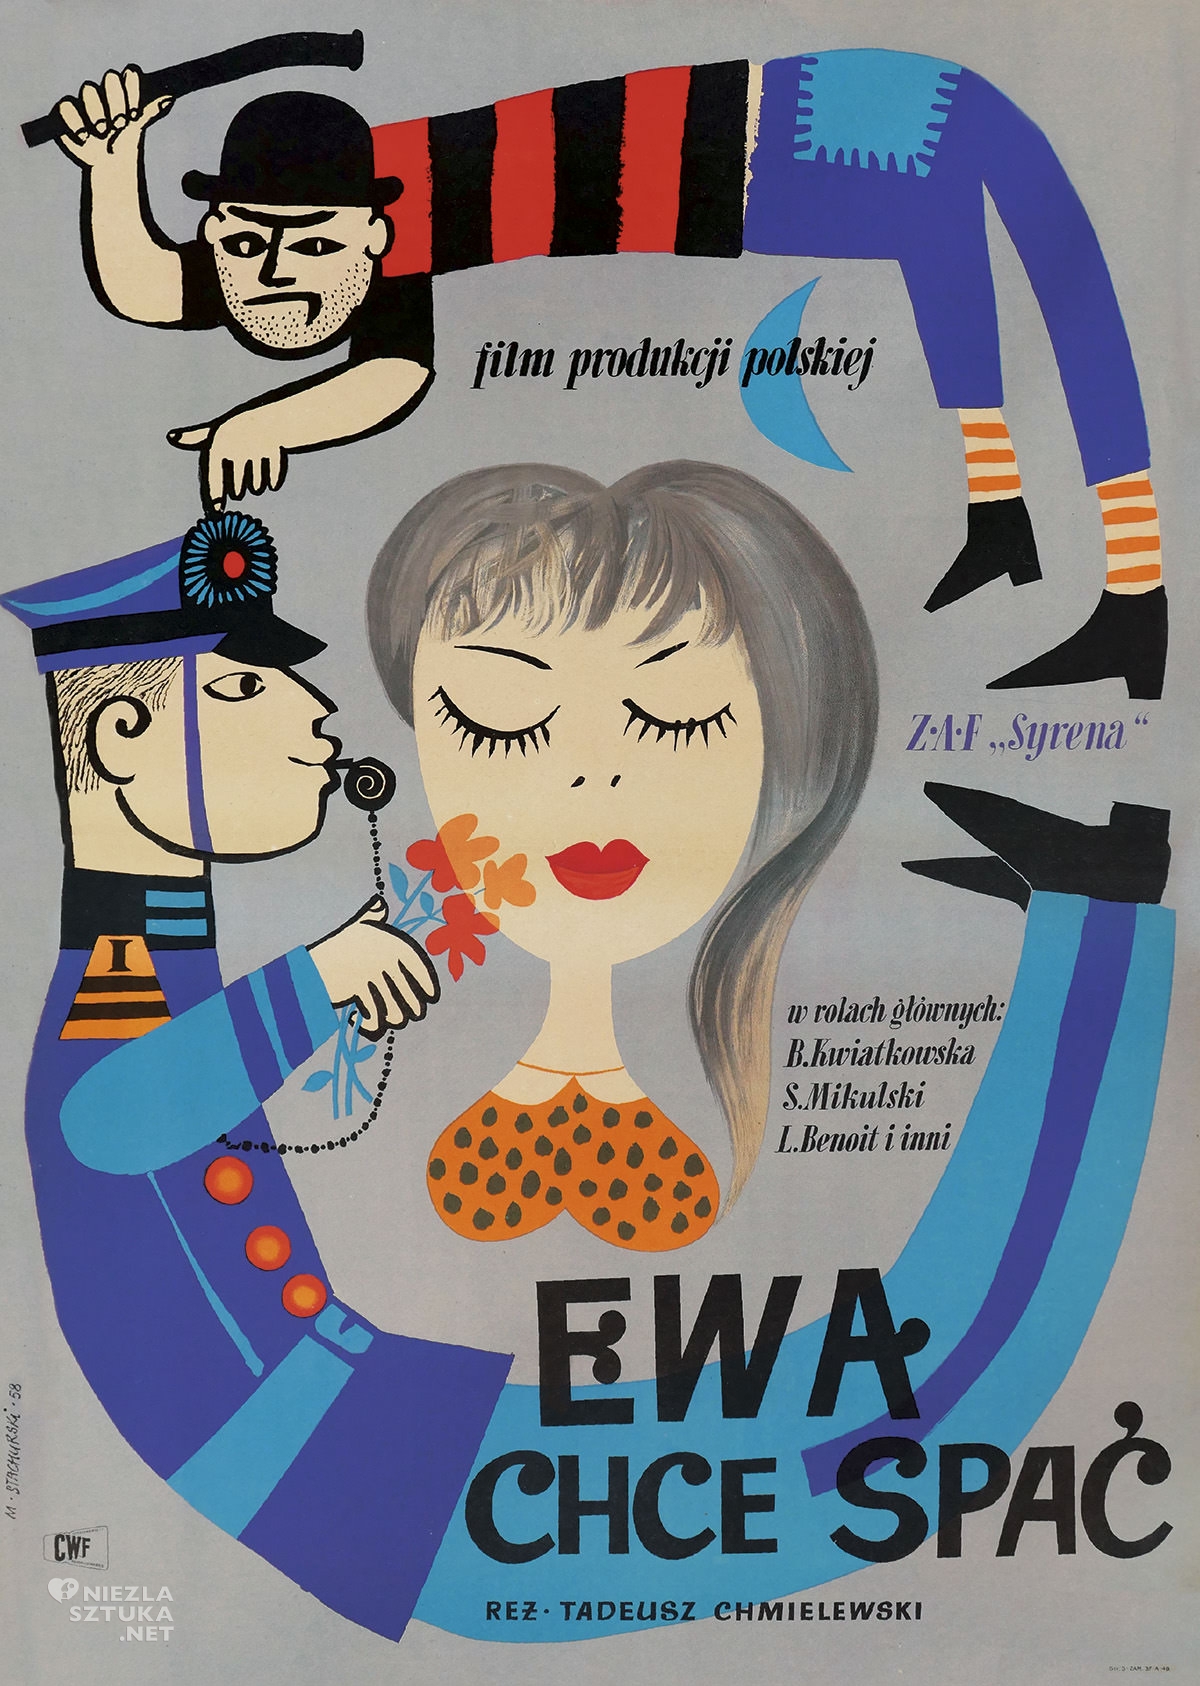 Marian Stachurski, Ewa chce spać, polski ilustrator, polska ilustracja, plakat, niezła sztuka